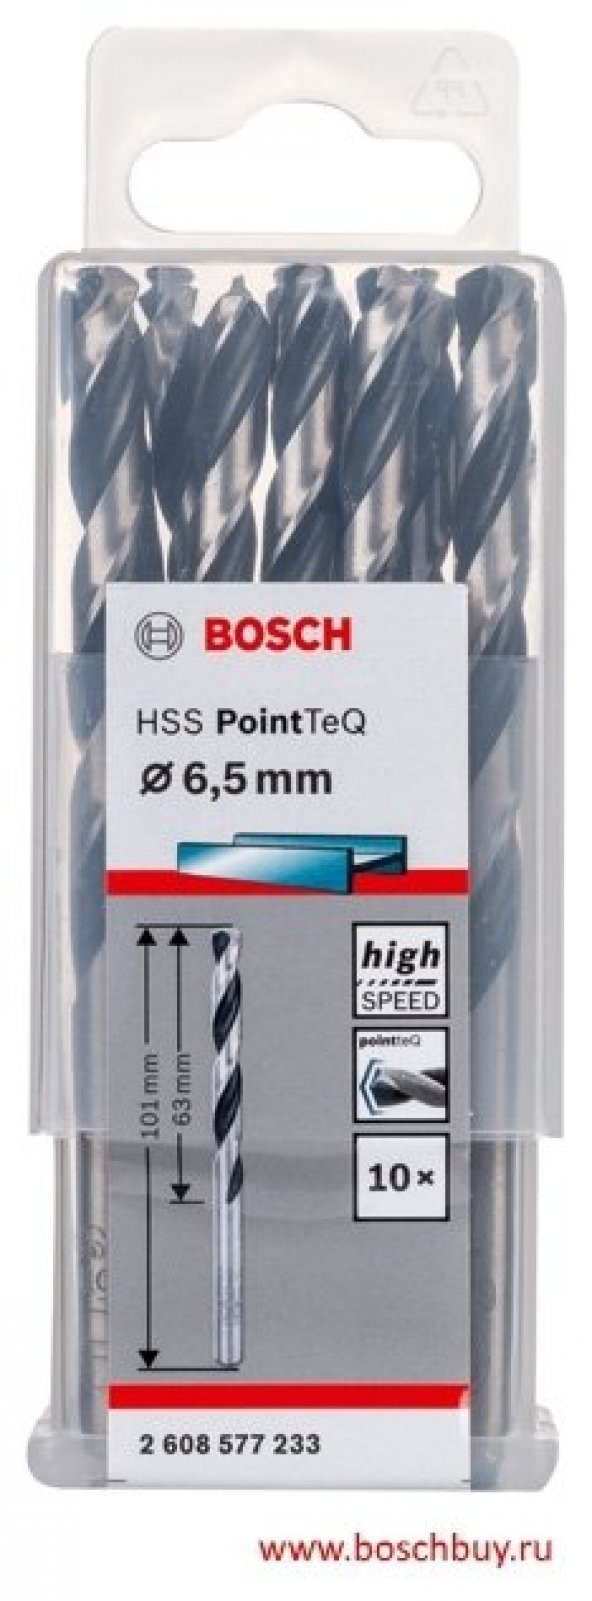 Bosch HSS PointTeQ Matkap Uç Metal 6.5x63x101mm 10 Parça